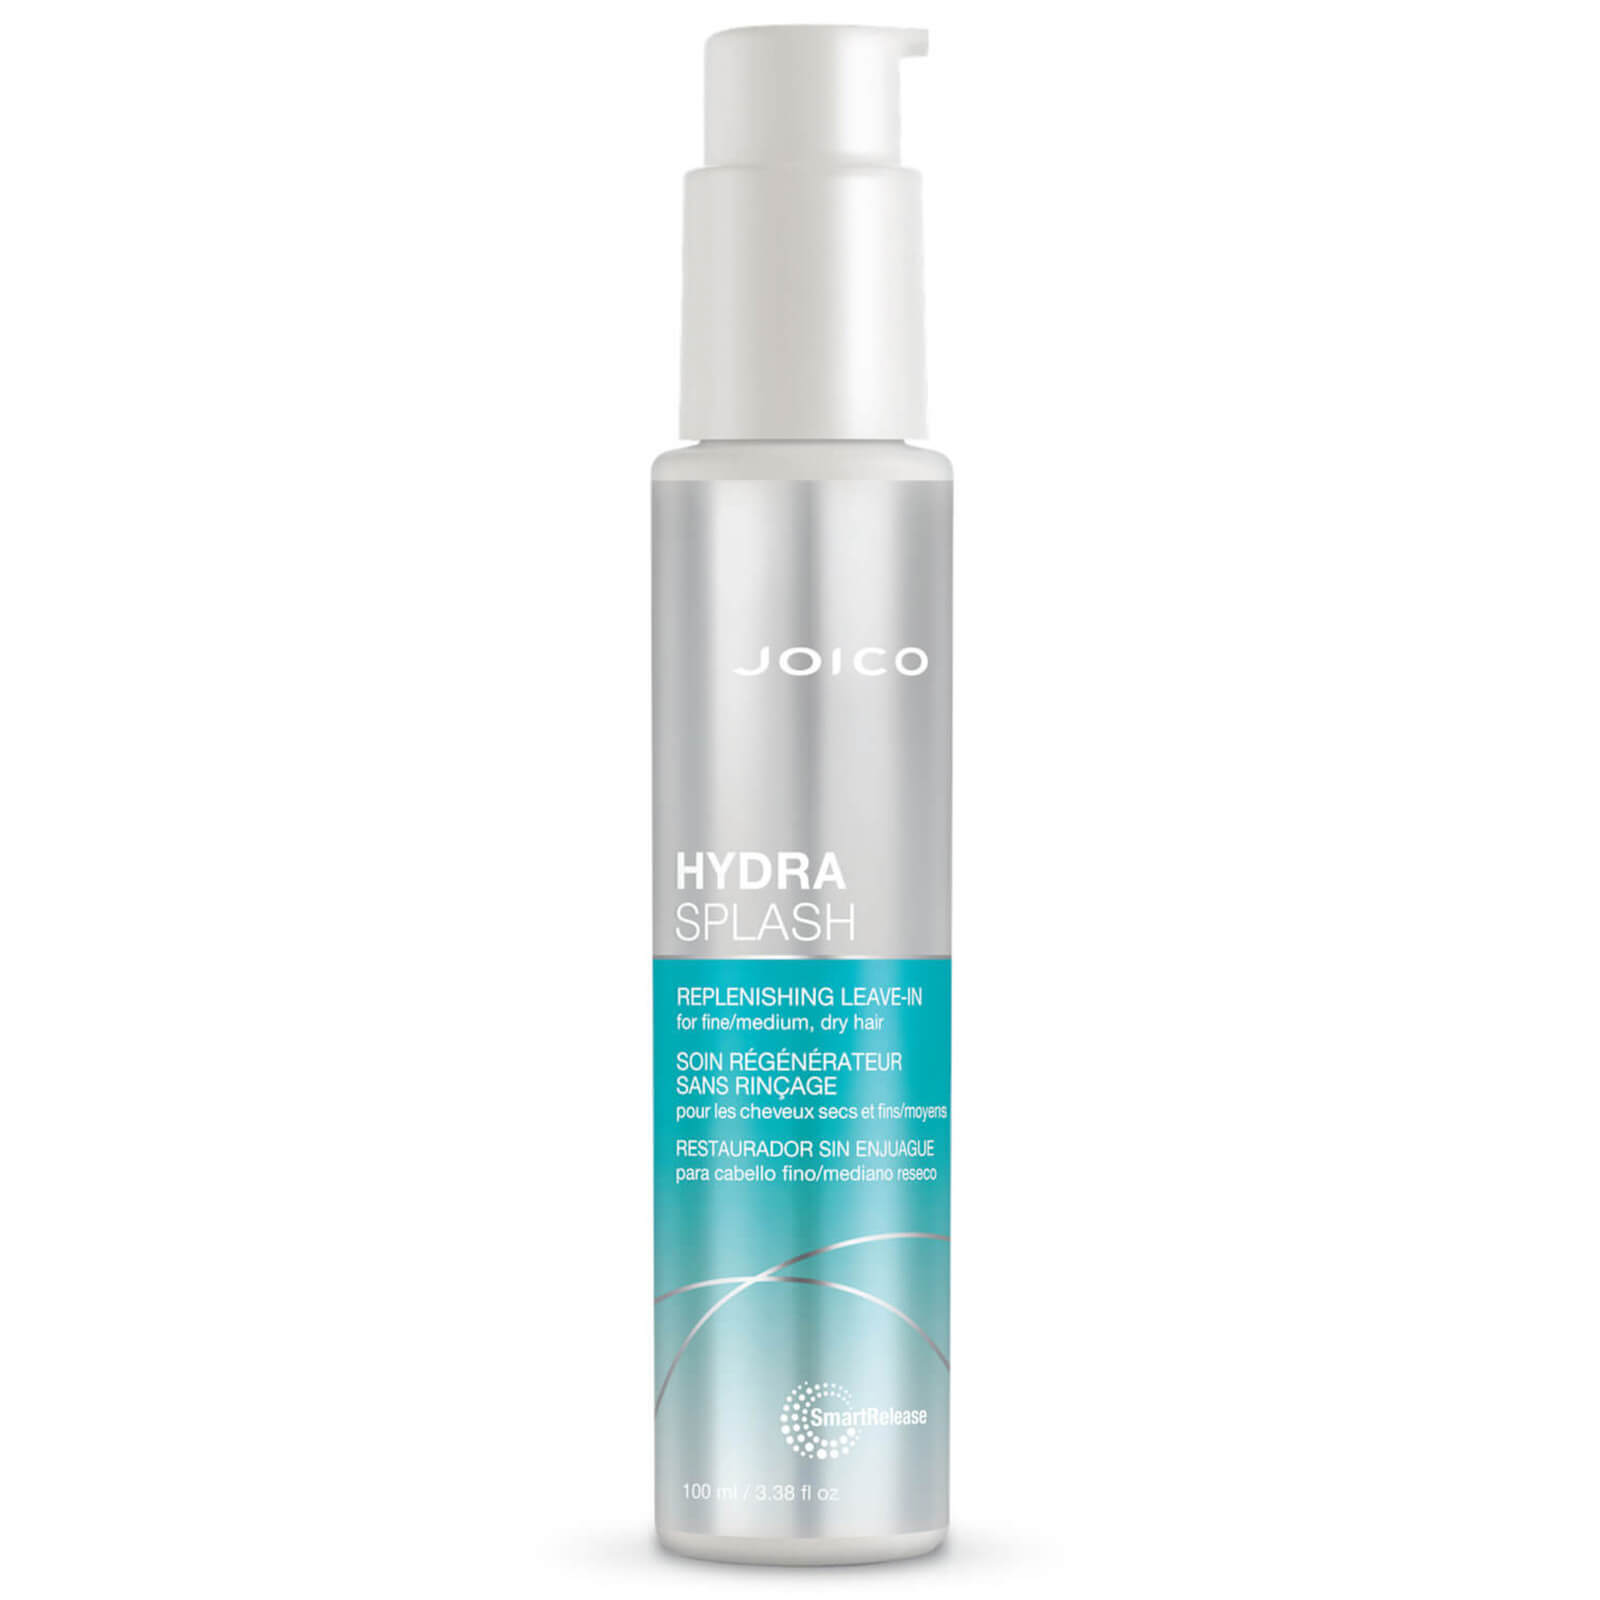 Joico Hydra Splash Replenishing Leave-In For Fine-Medium, Dry Hair 100ml von Joico